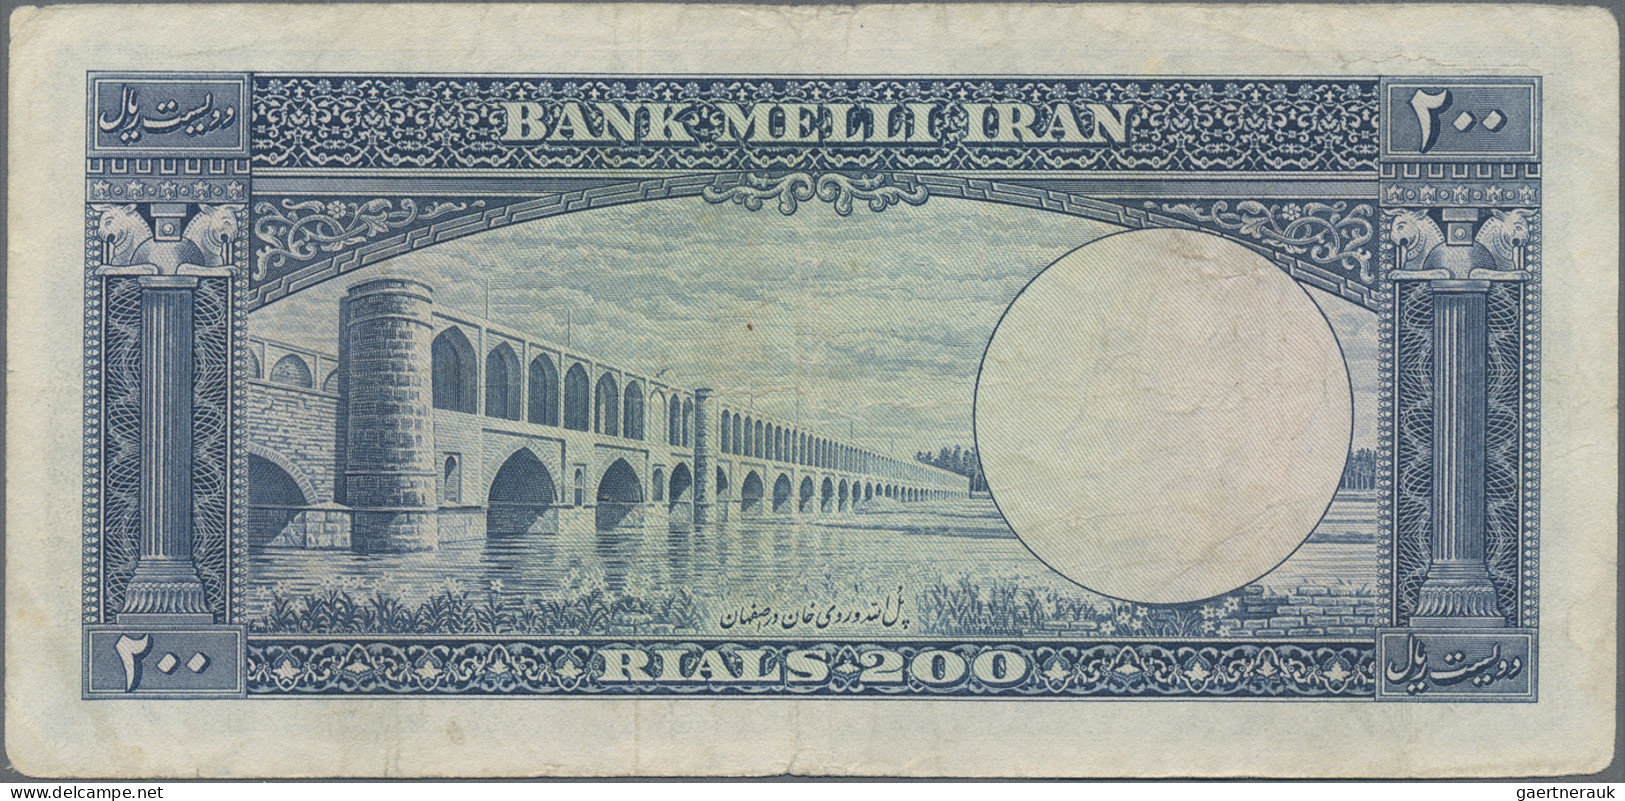 Iran: Bank Melli Iran, huge lot with 16 banknotes series 1951-1958, comprising 1